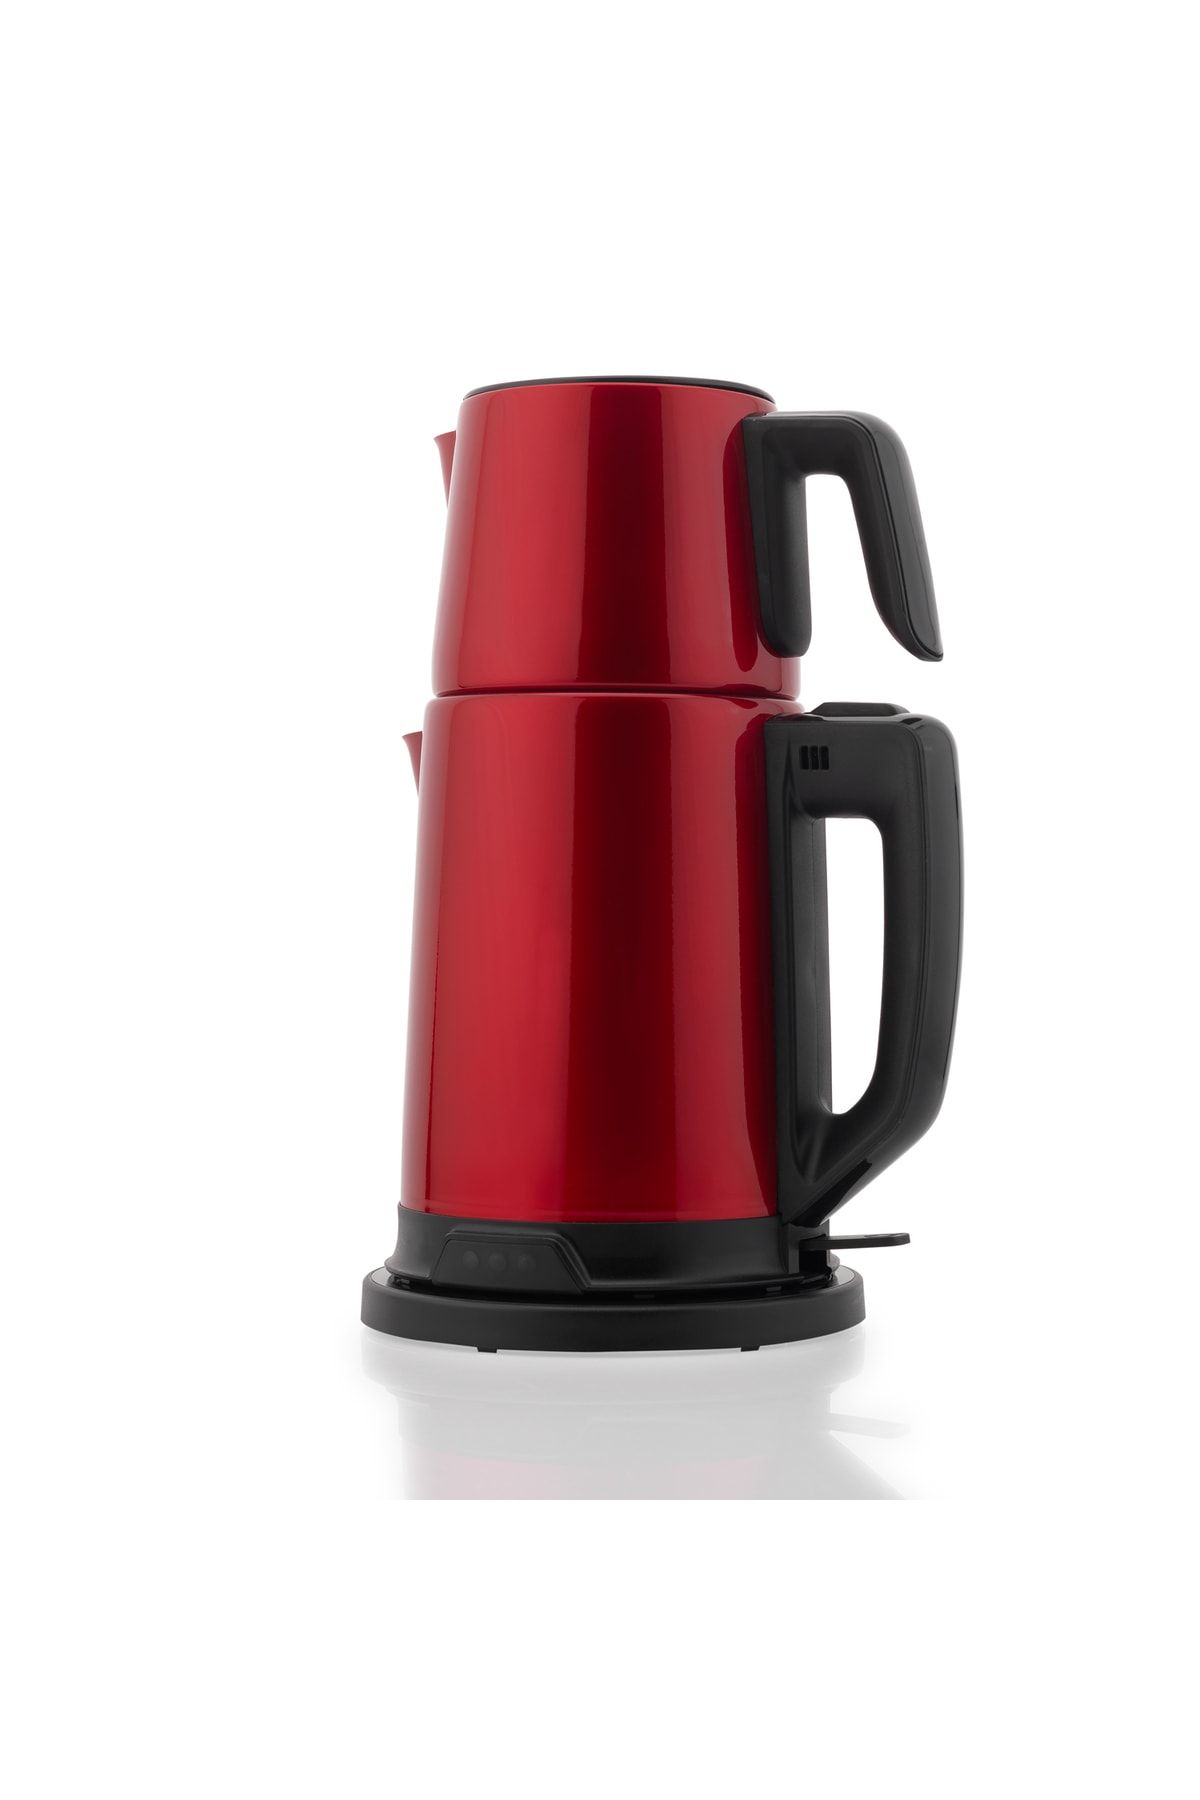 Schafer Teelike Elektrikli Çay Makinesi-kırmızı